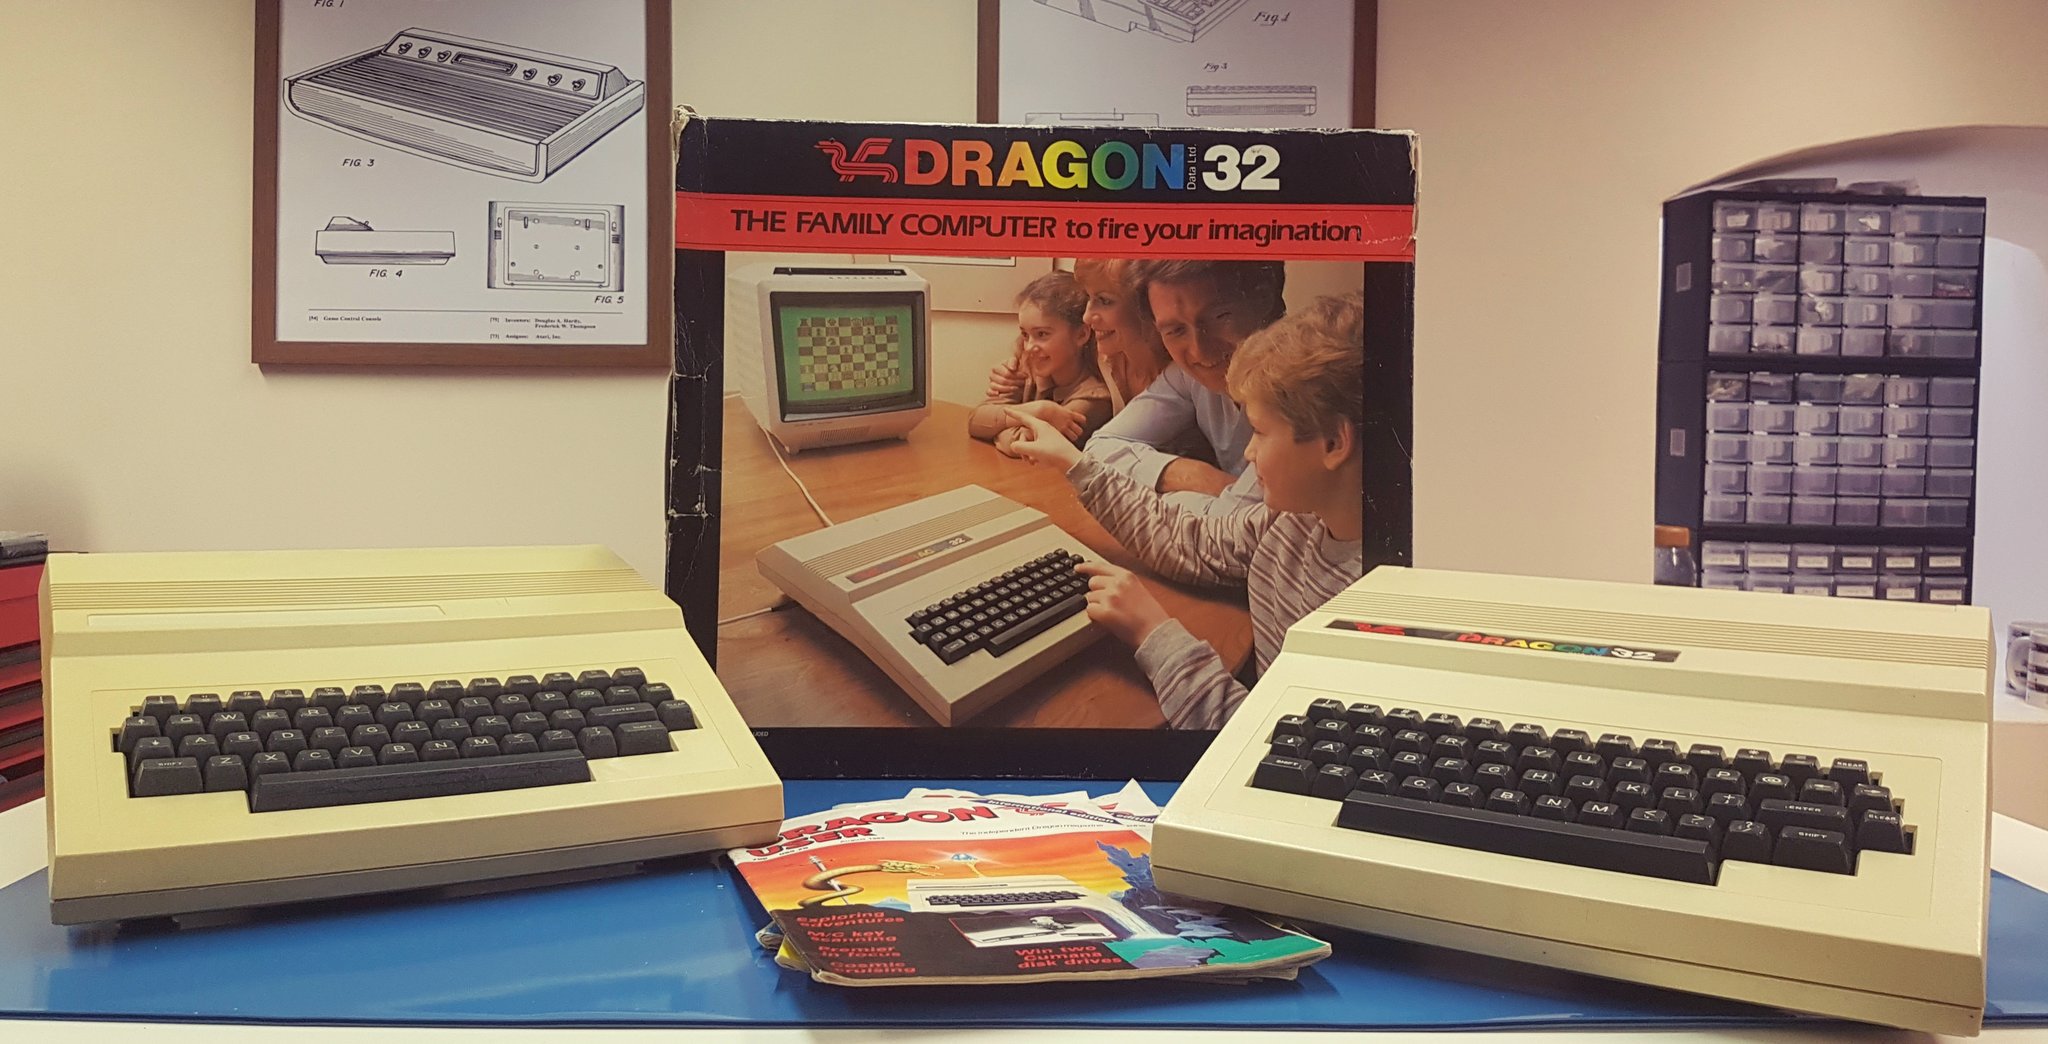 Zwei Dragon Computer aus dem Bestand von "Retro Man Cave". (Bild: Neil, Twitter: @TheRetroManCave)